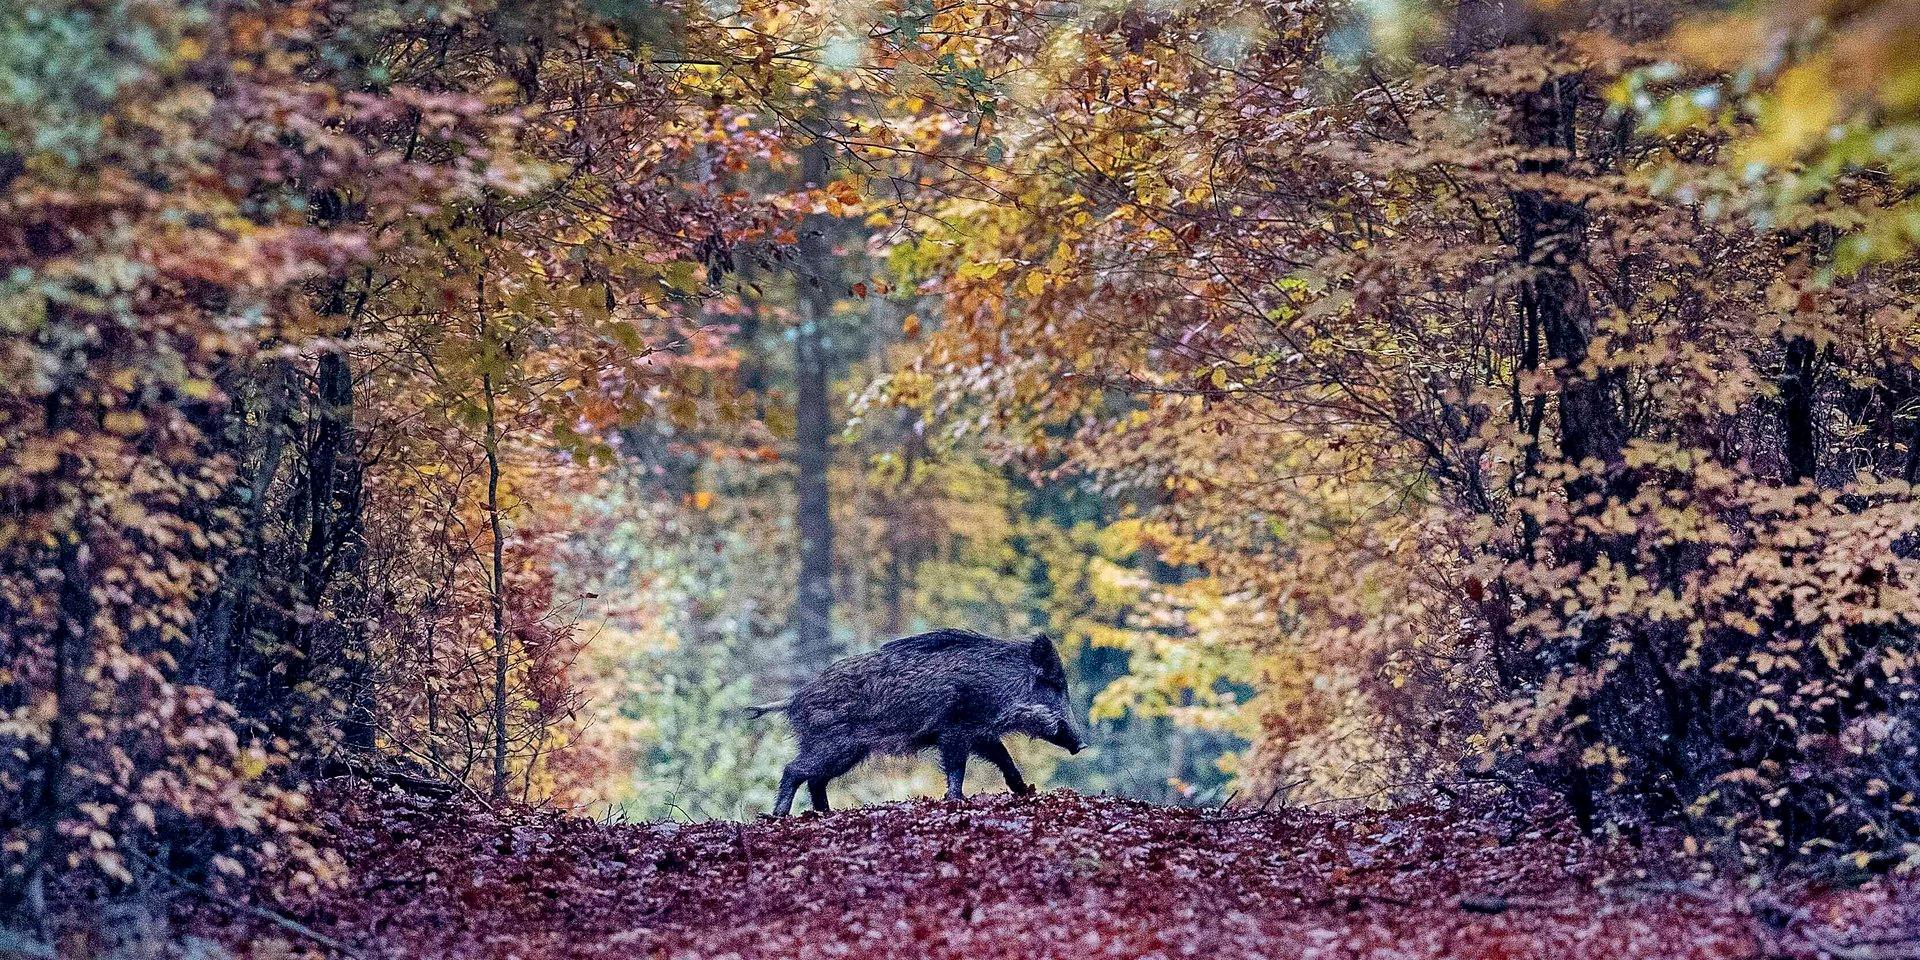 A wild boar runs through a forest in the Taunus region near Frankfurt, Germany, Saturday, Nov. 9, 2019. (AP Photo/Michael Probst)